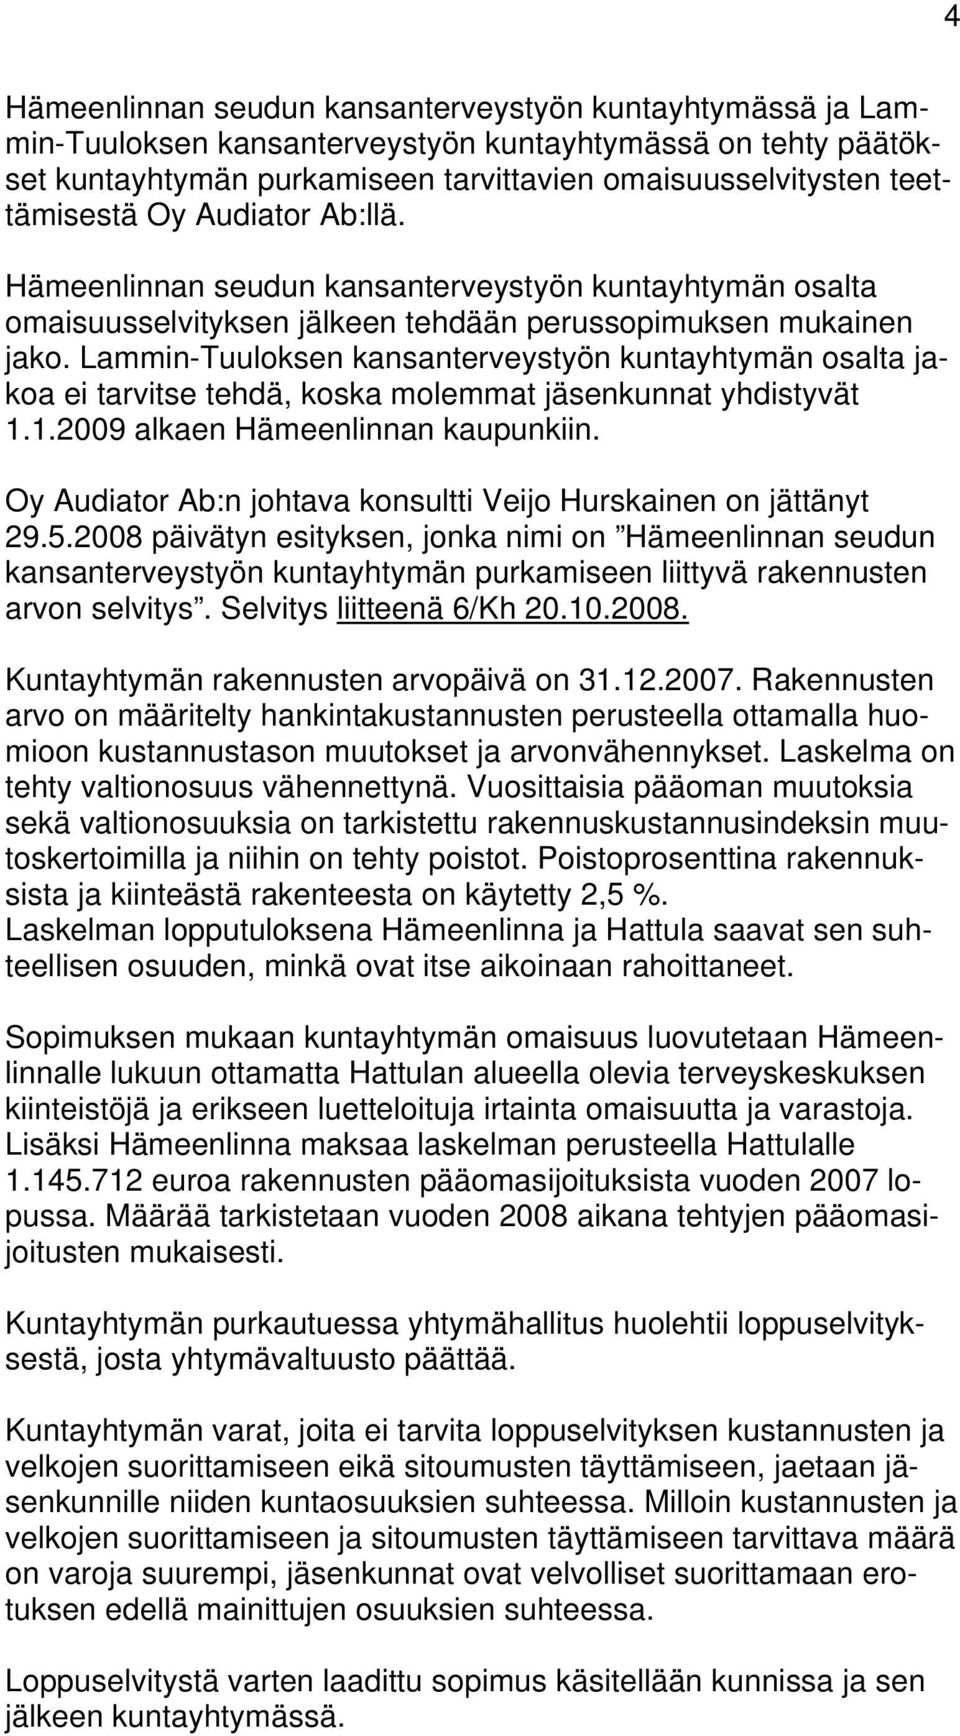 Lammin-Tuuloksen kansanterveystyön kuntayhtymän osalta jakoa ei tarvitse tehdä, koska molemmat jäsenkunnat yhdistyvät 1.1.2009 alkaen Hämeenlinnan kaupunkiin.